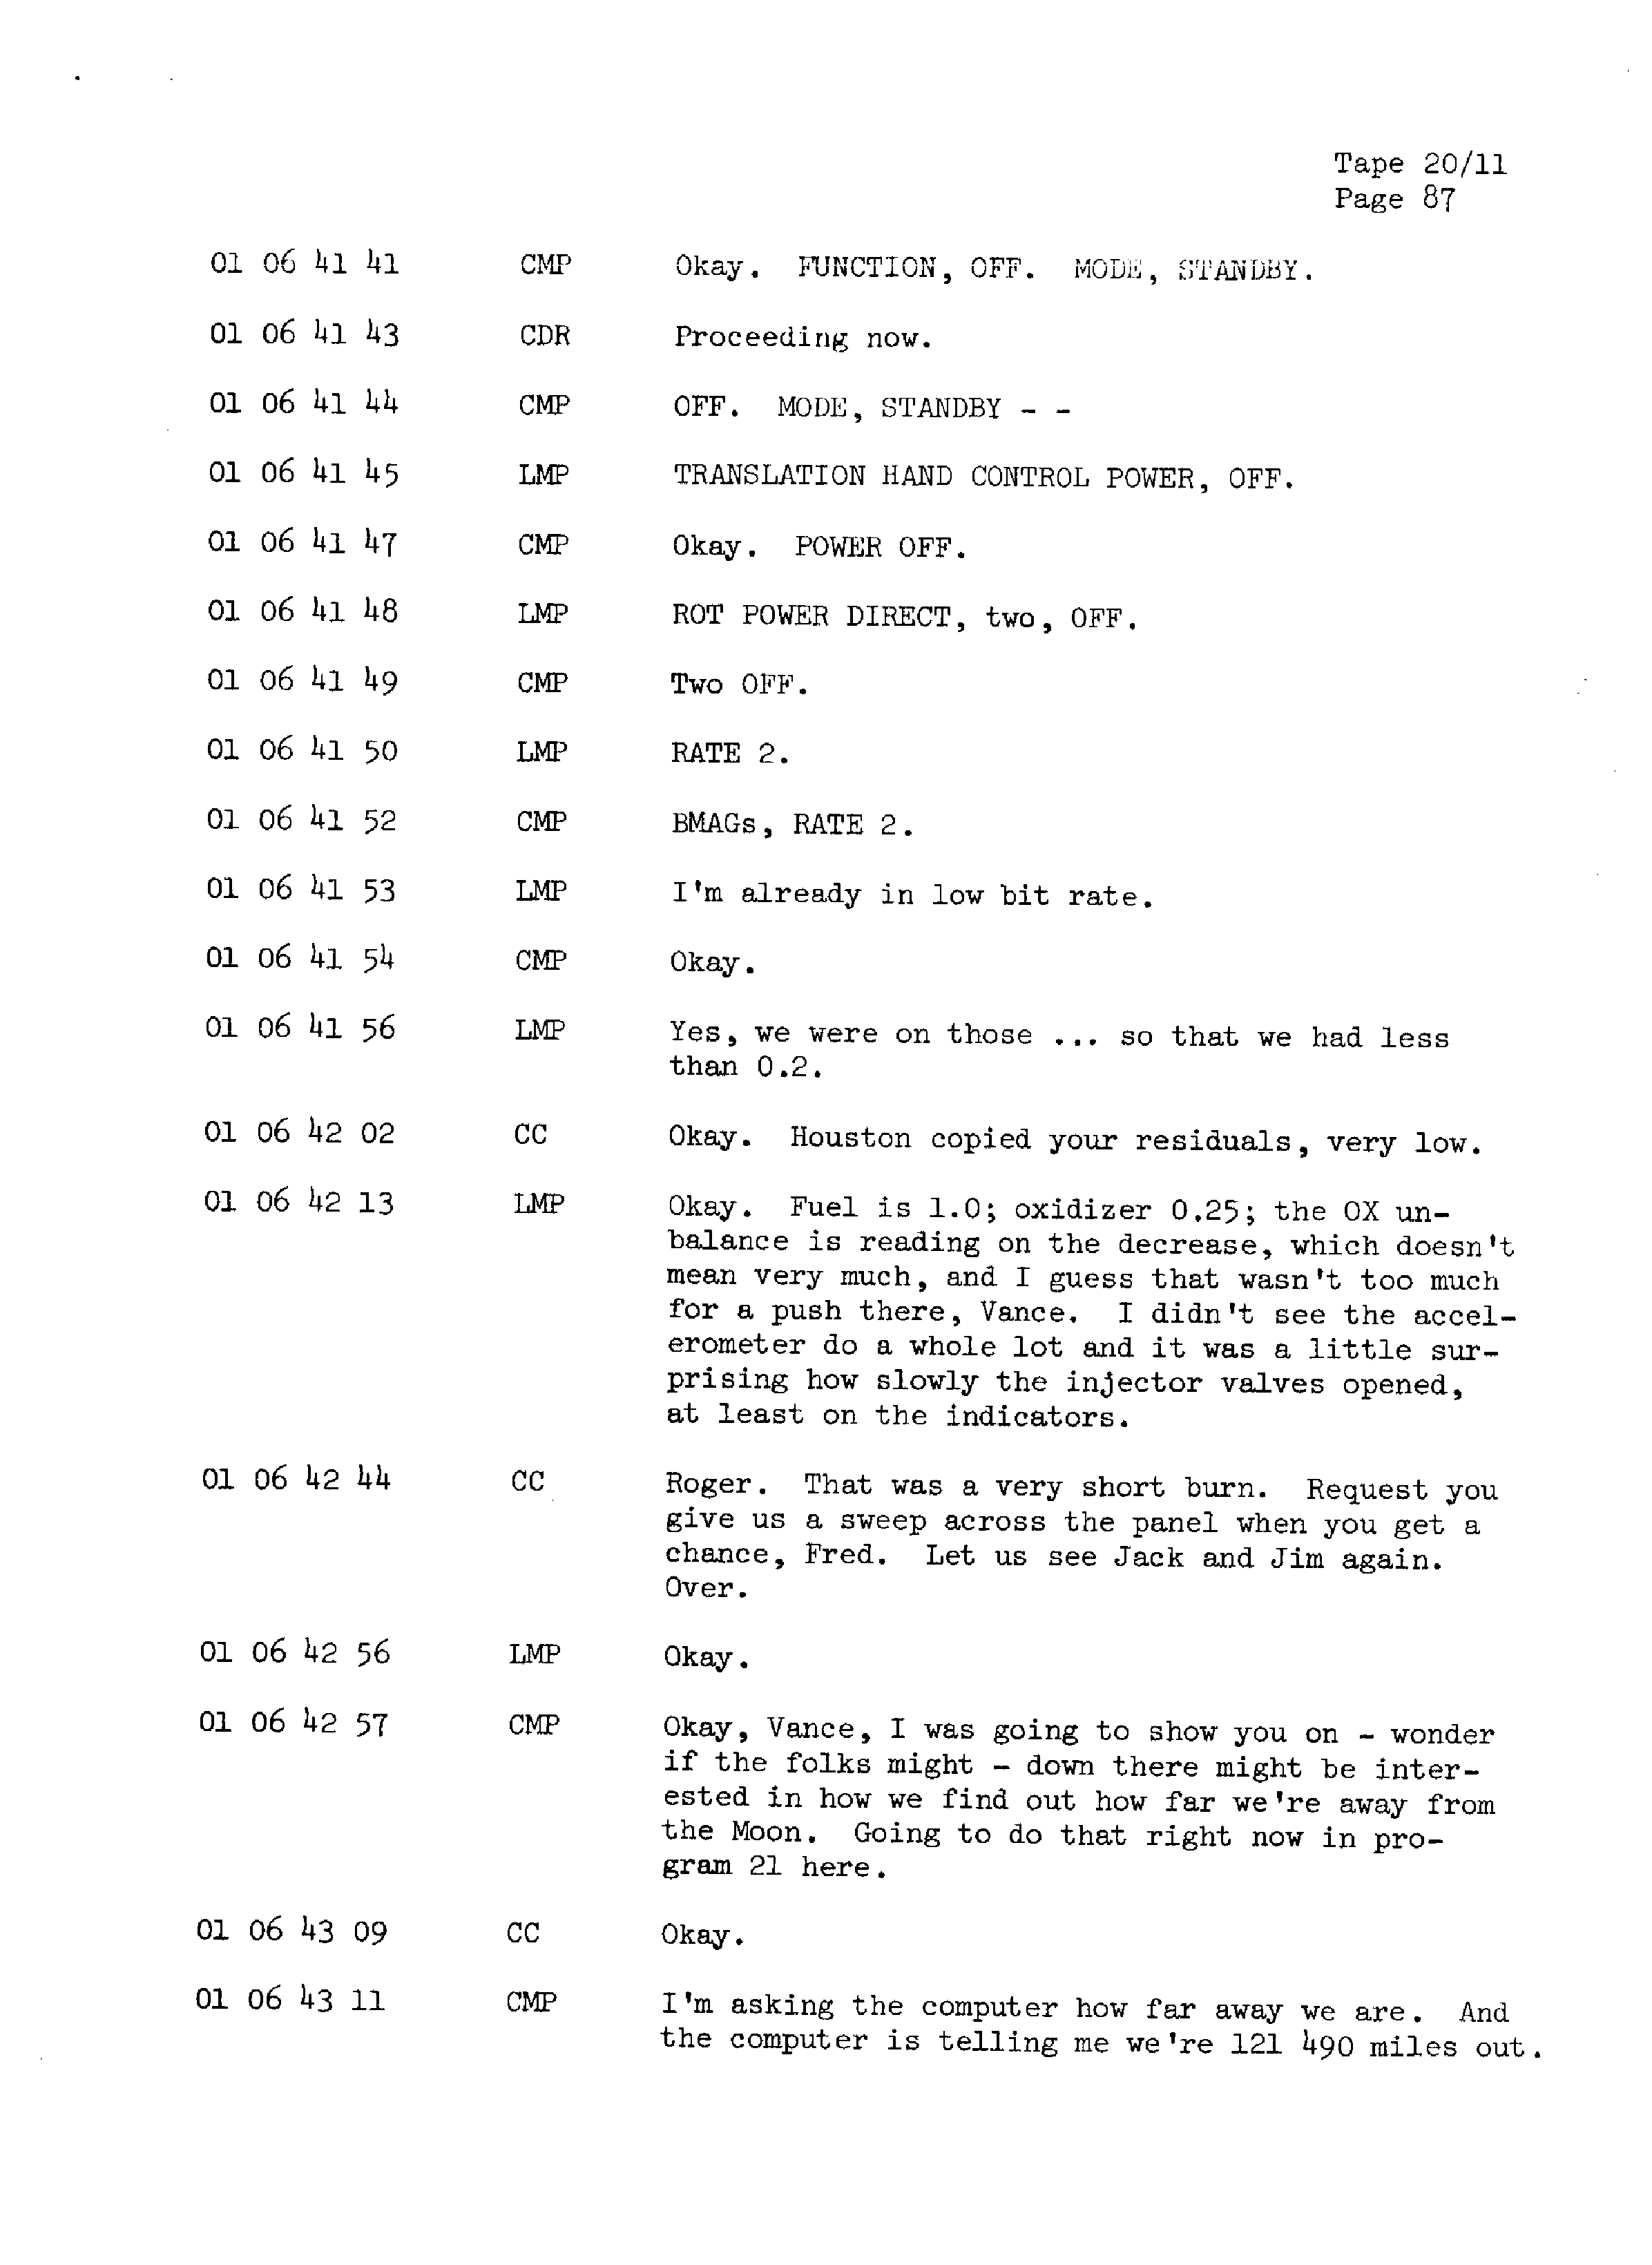 Page 94 of Apollo 13’s original transcript